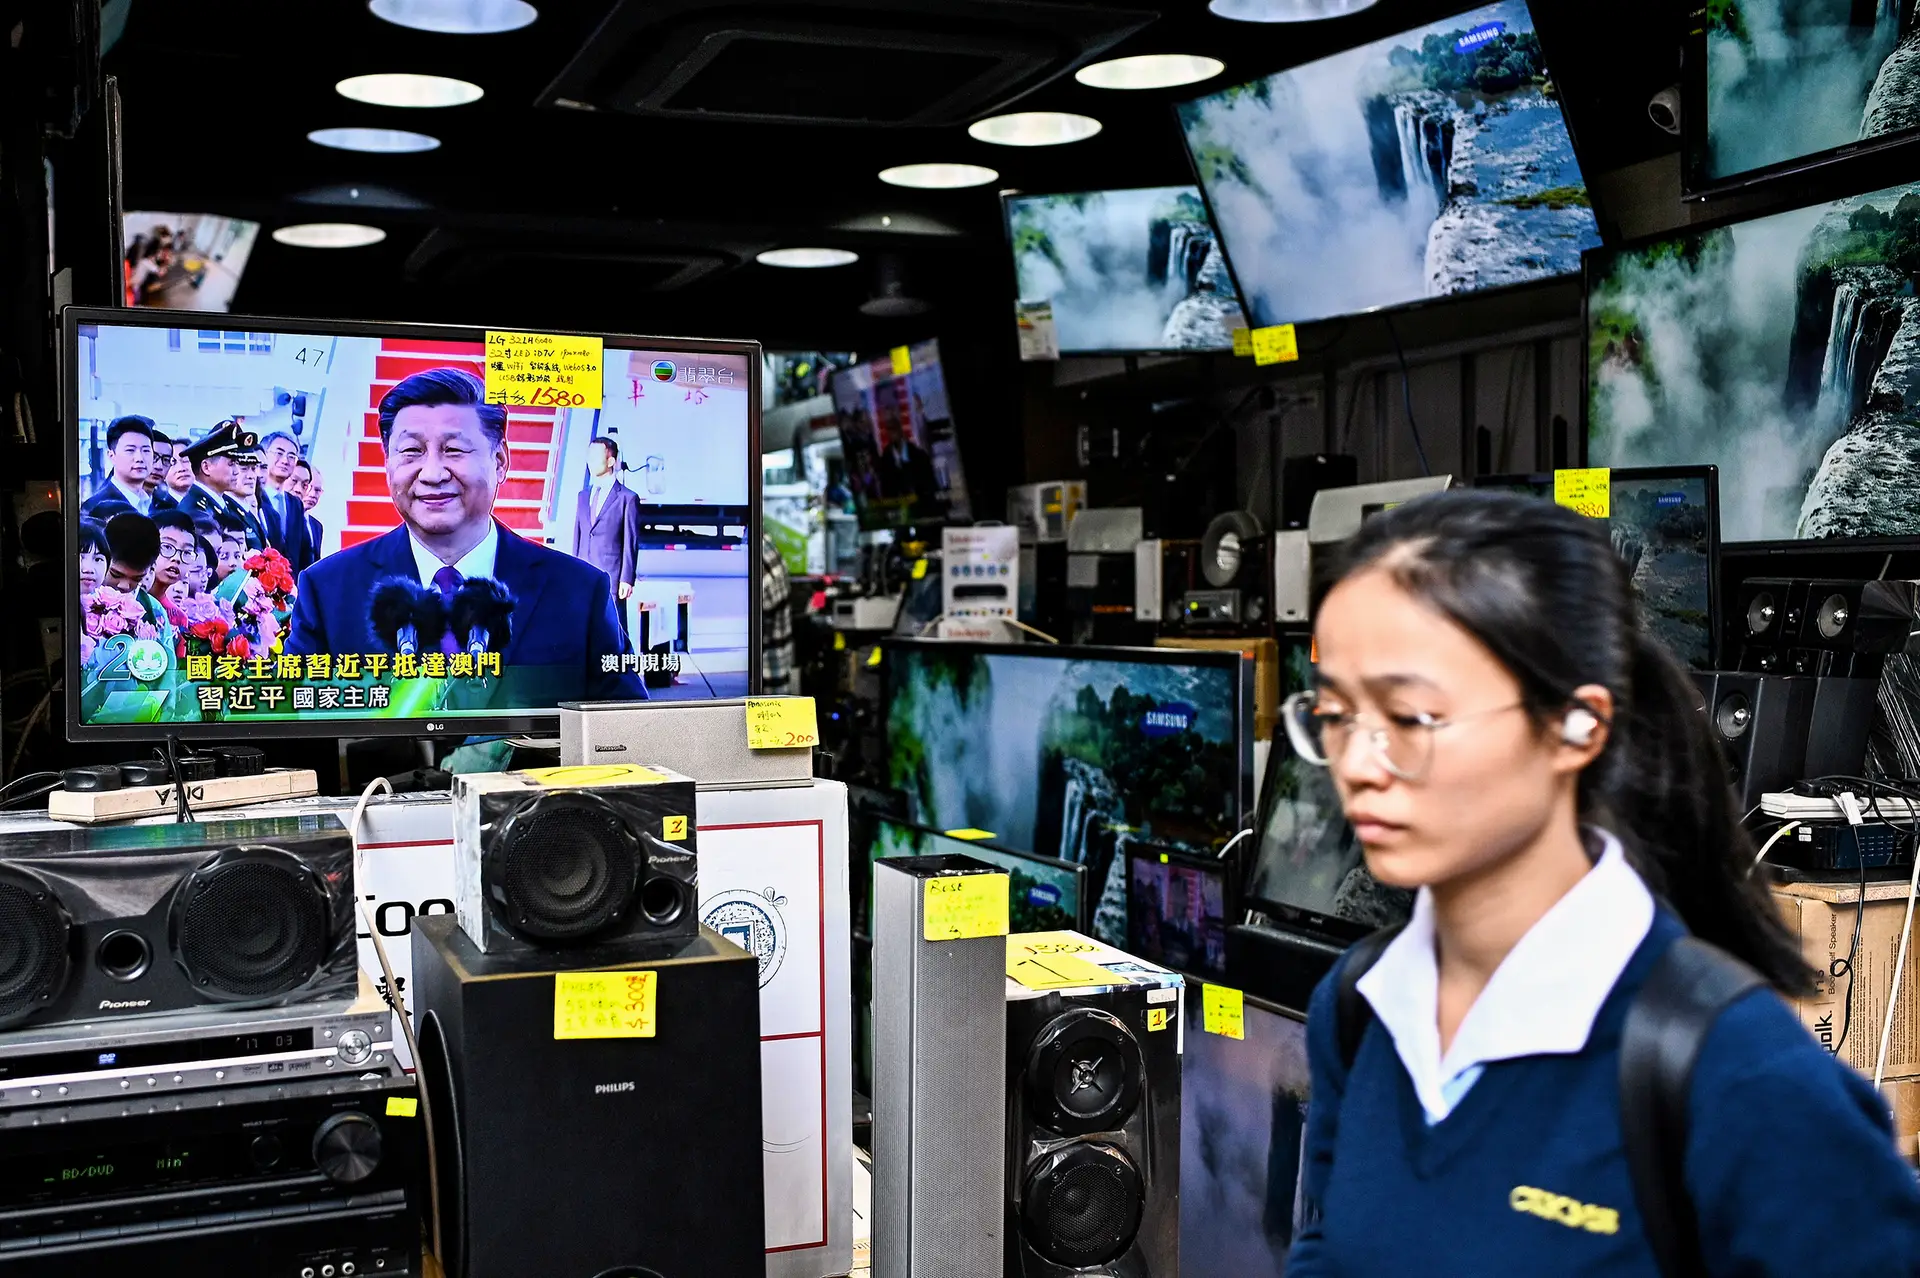 O televisor de uma loja de Hong Kong mostra o Presidente Xi Jinping a chegar a Macau, em dezembro de 2019